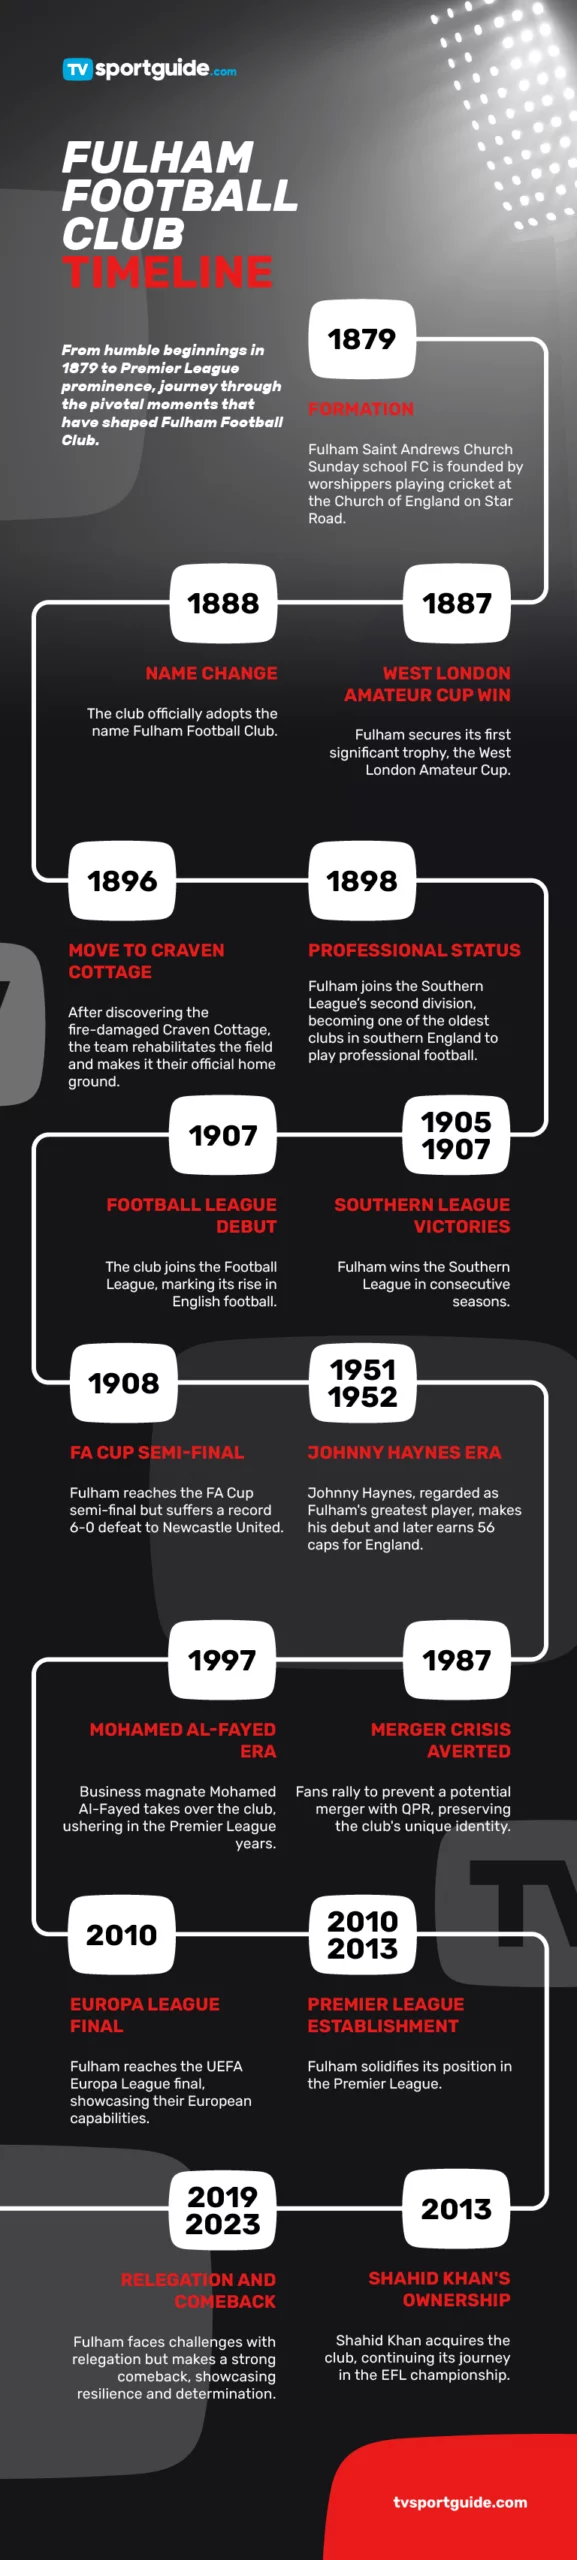 Fulham football club timeline